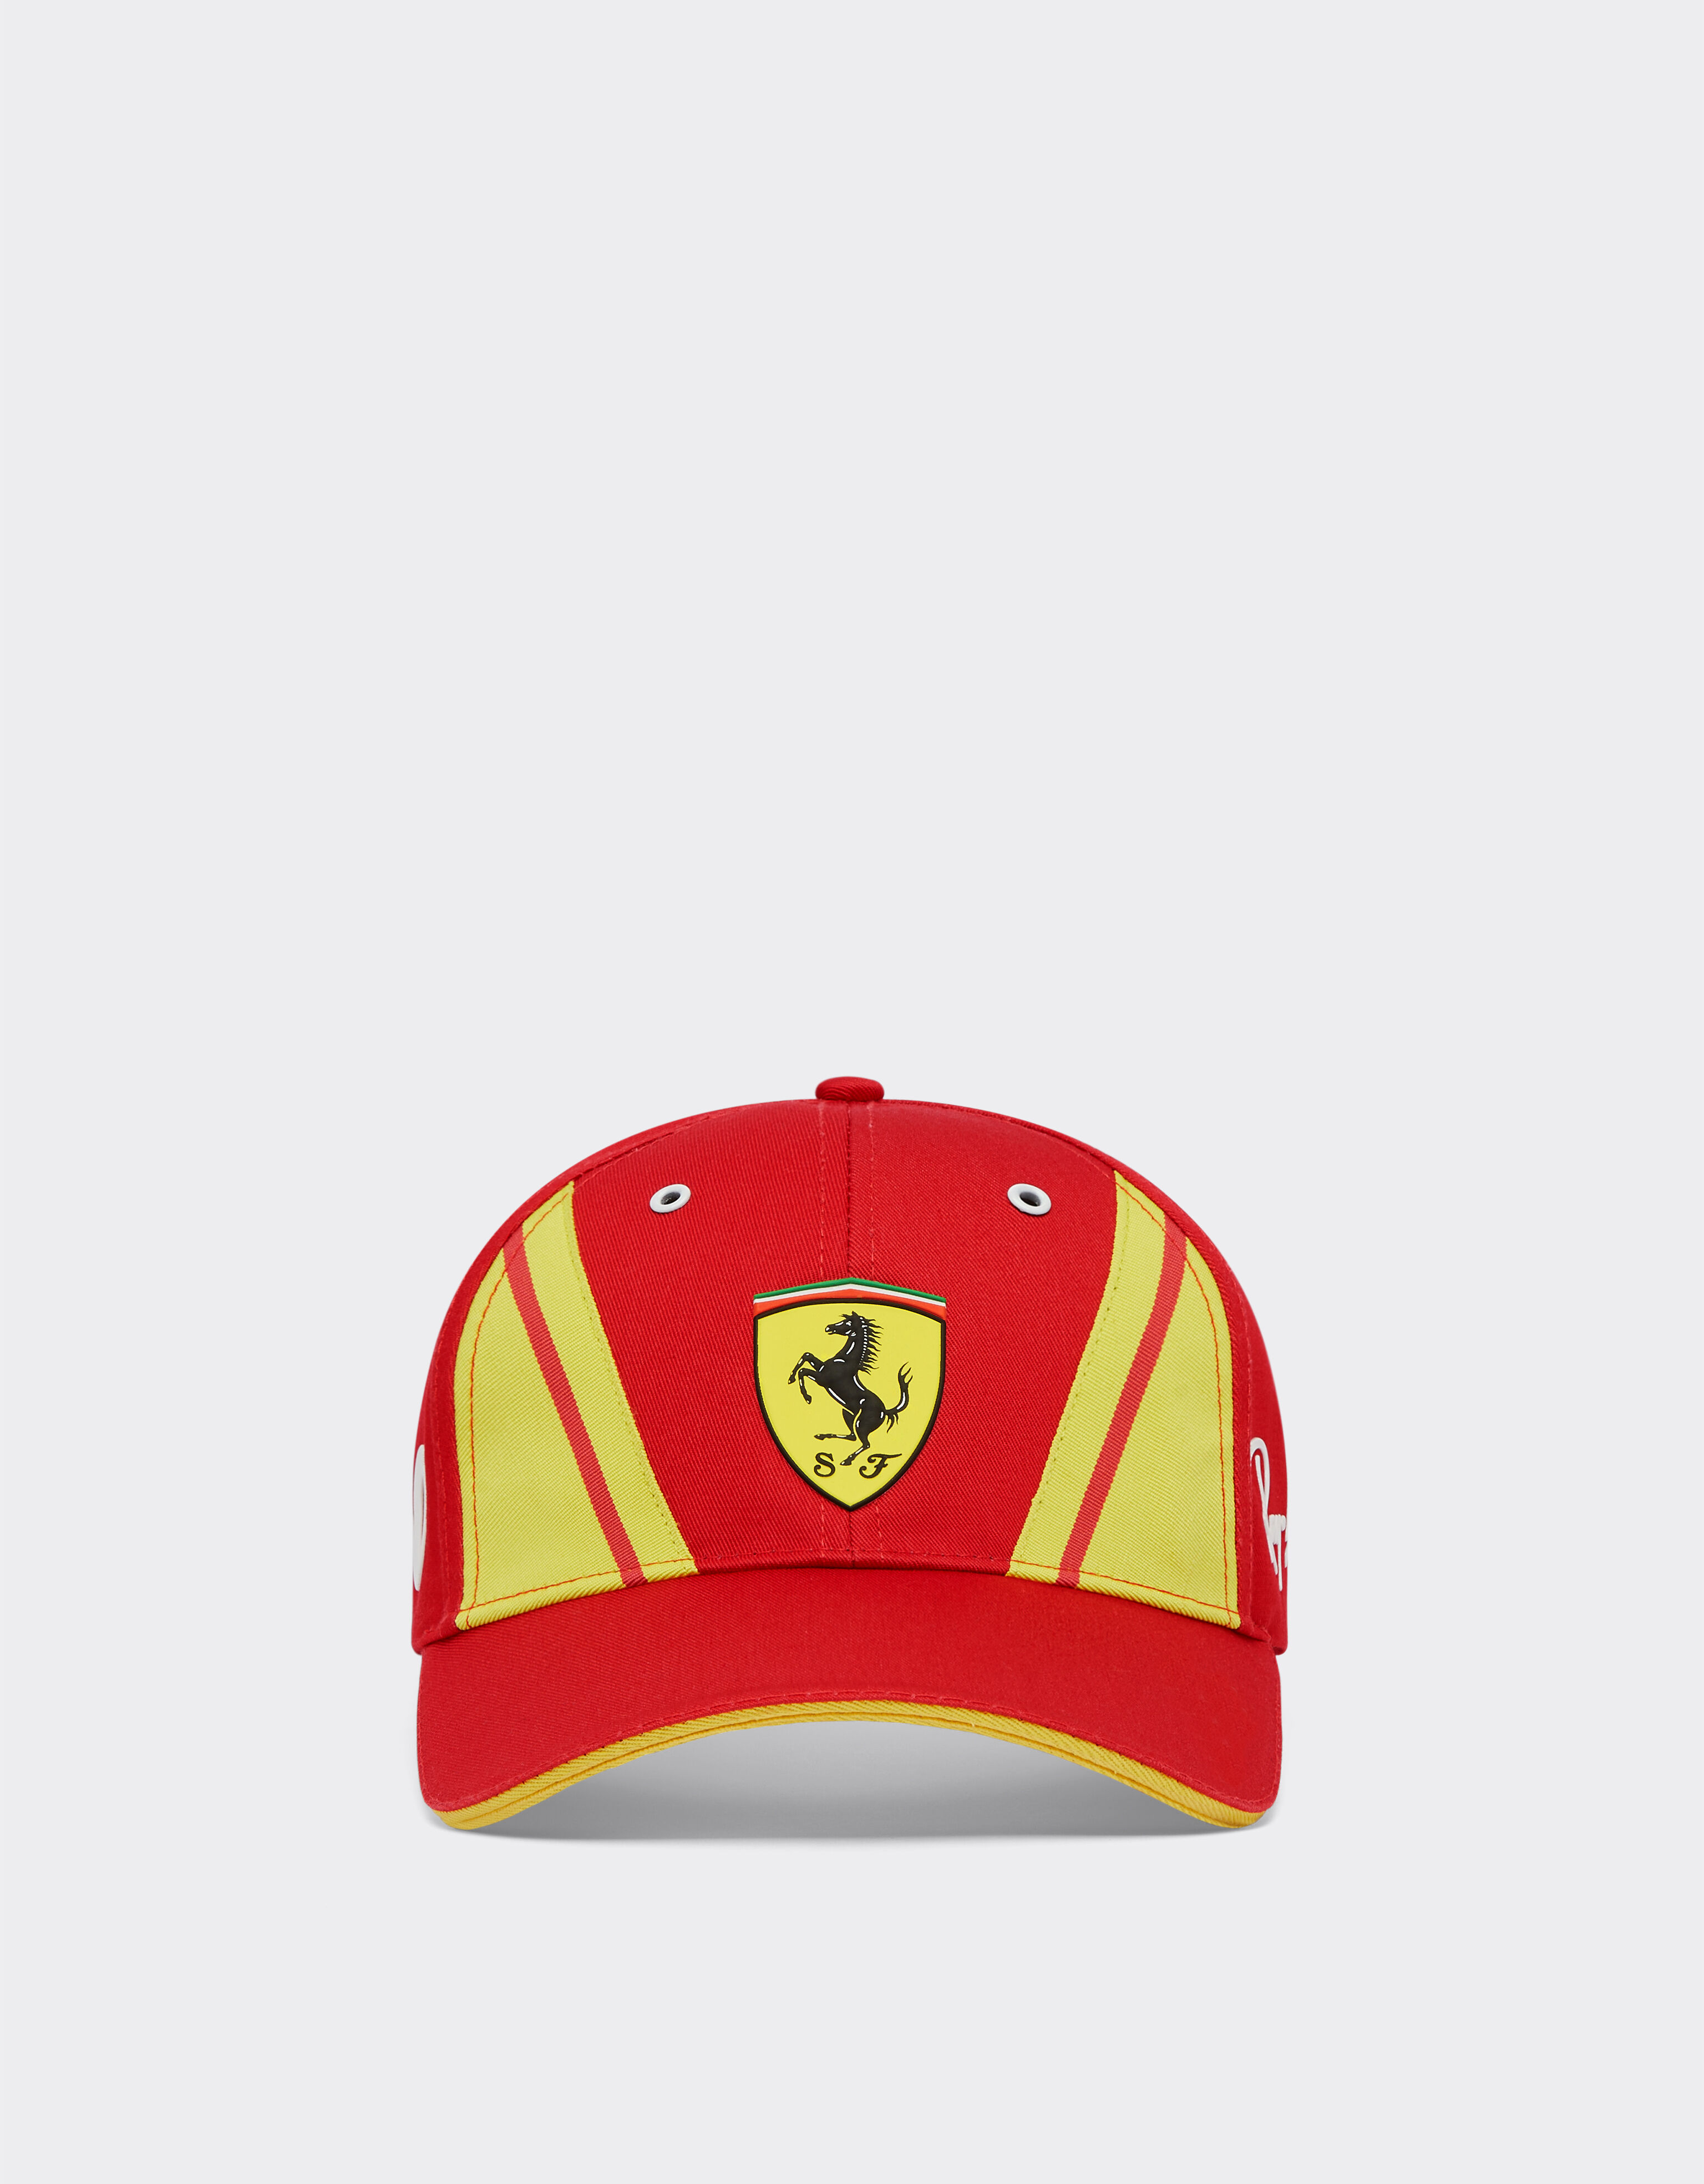 ${brand} Casquette Ferrari Hypercar 50 ${colorDescription} ${masterID}